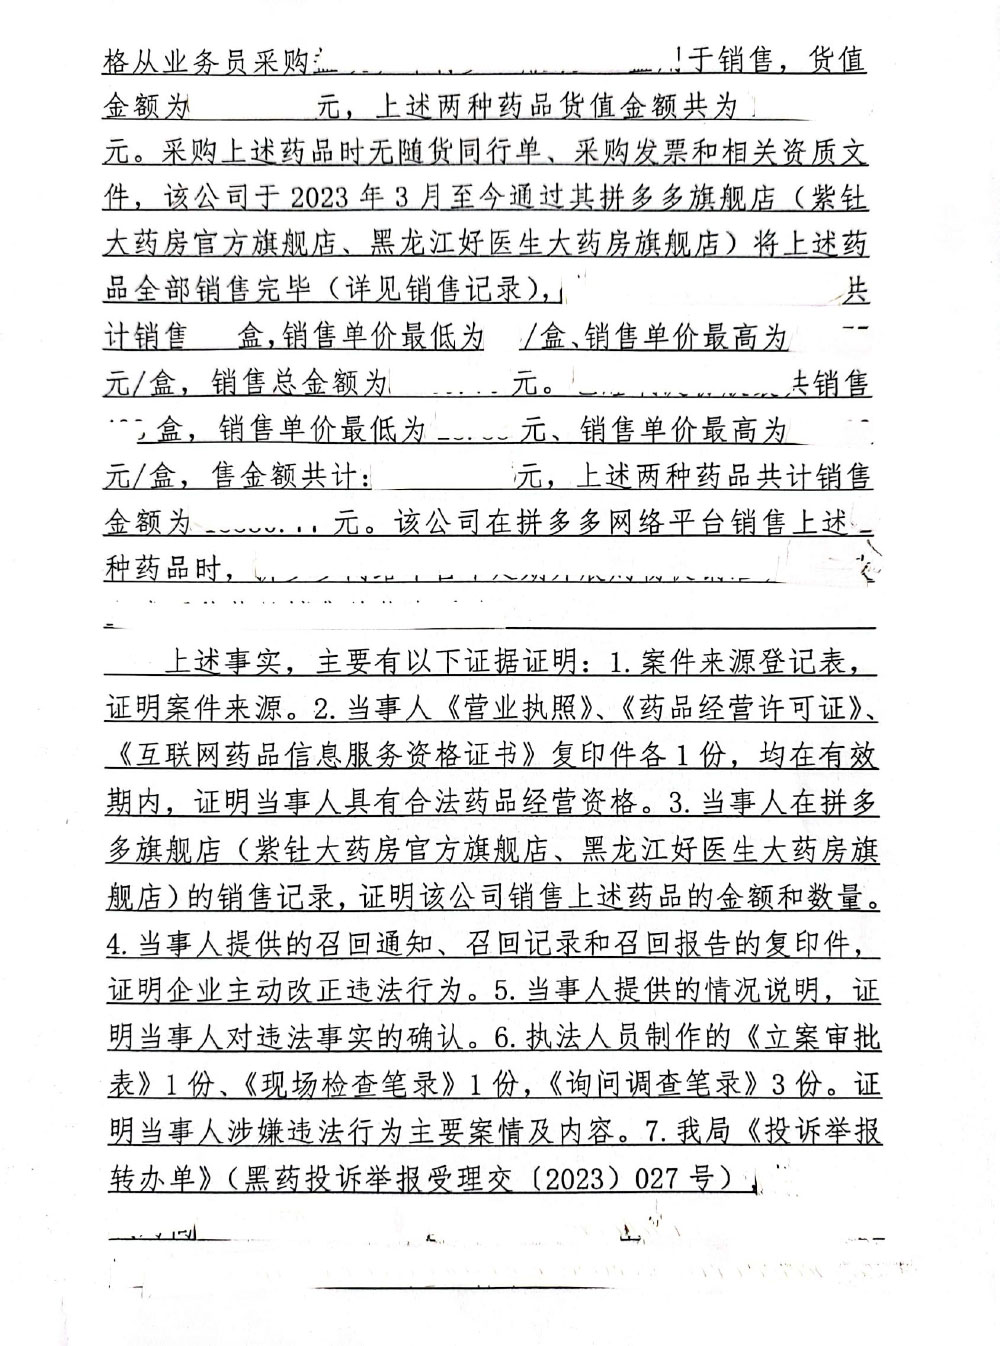 黑龙江省好医生大药房连锁有限公司未从药品上市许可持有人或者具有药品生产、经营资格的企业购进药品案